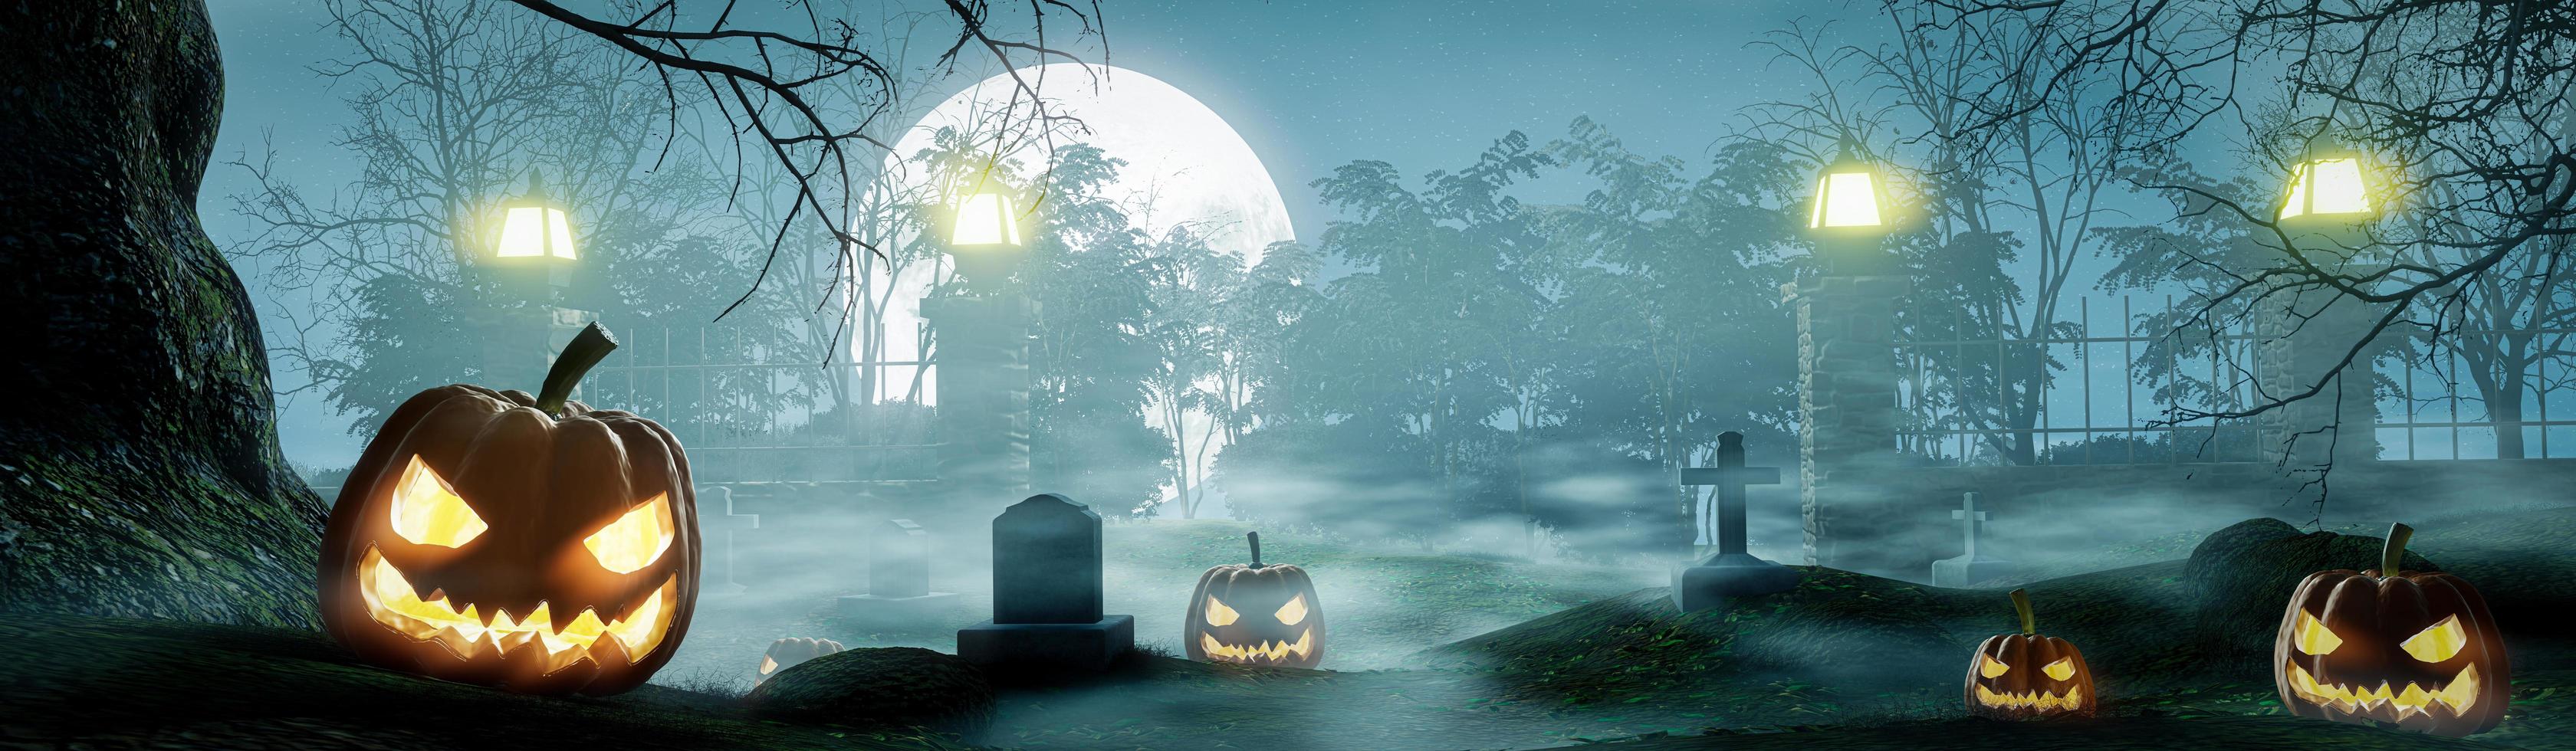 cimetière de nuit d'halloween, nombreuses tombes, avec des citrouilles sculptées au visage du diable. la pleine lune était brumeuse, au-dessus du sol les arbres avaient des branches sans feuilles. rendu 3d photo